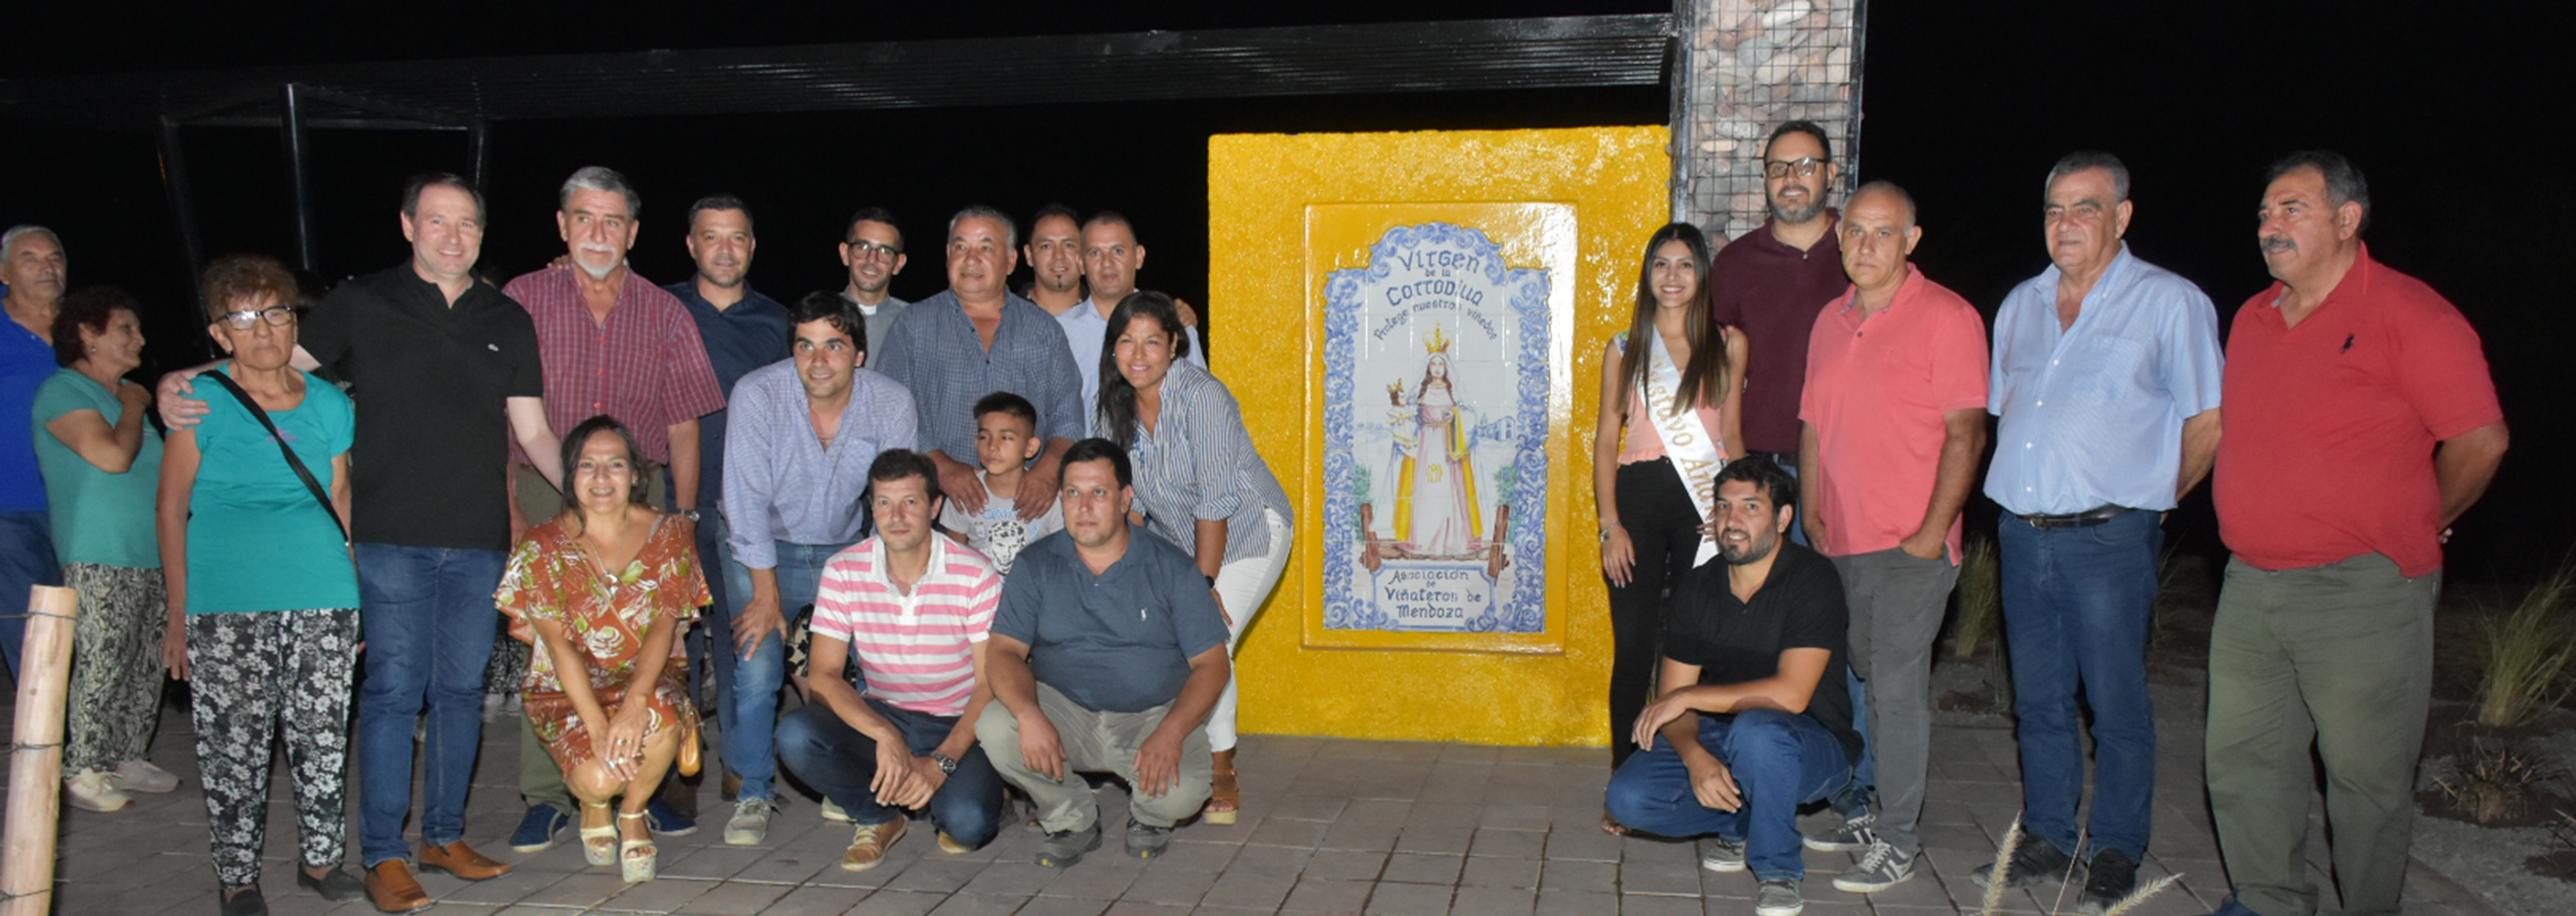 Se inauguró el mural Virgen de la Carrodilla en Gustavo André